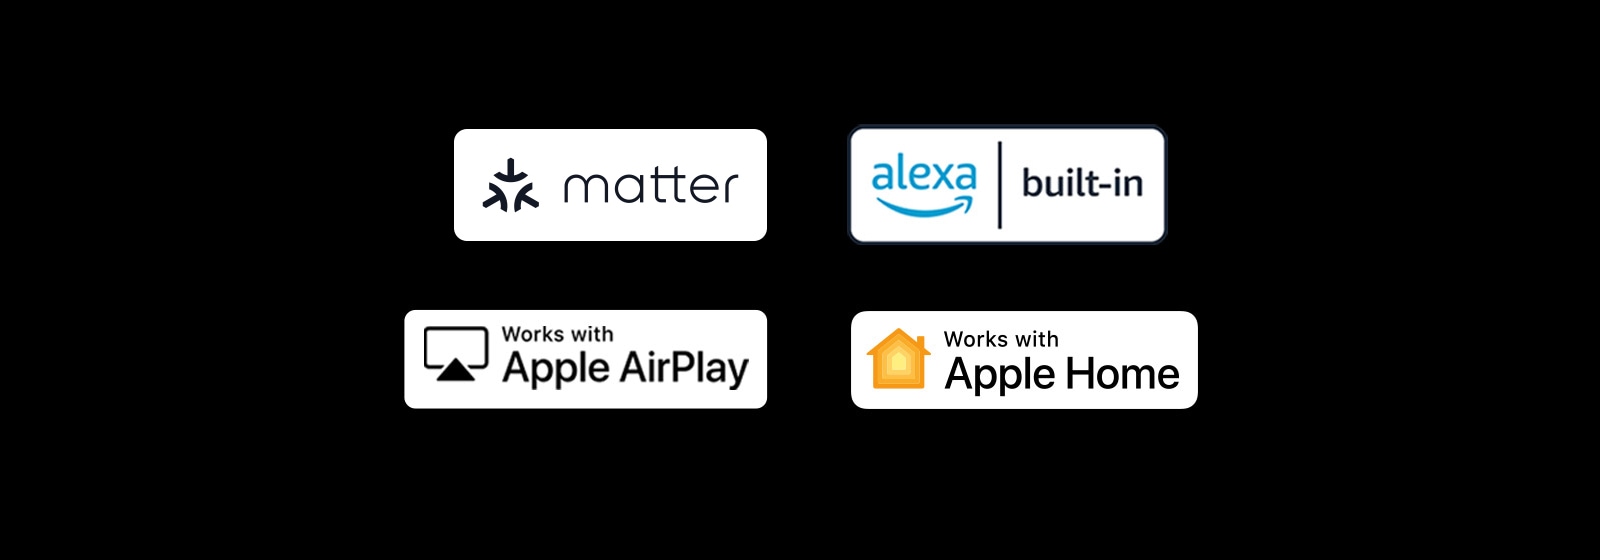 Logo của alexa được tích hợp sẵn<br>Logo của các tác phẩm với Apple AirPlay<br>Logo của các tác phẩm với Apple Home<br>Logo của các tác phẩm với Matter